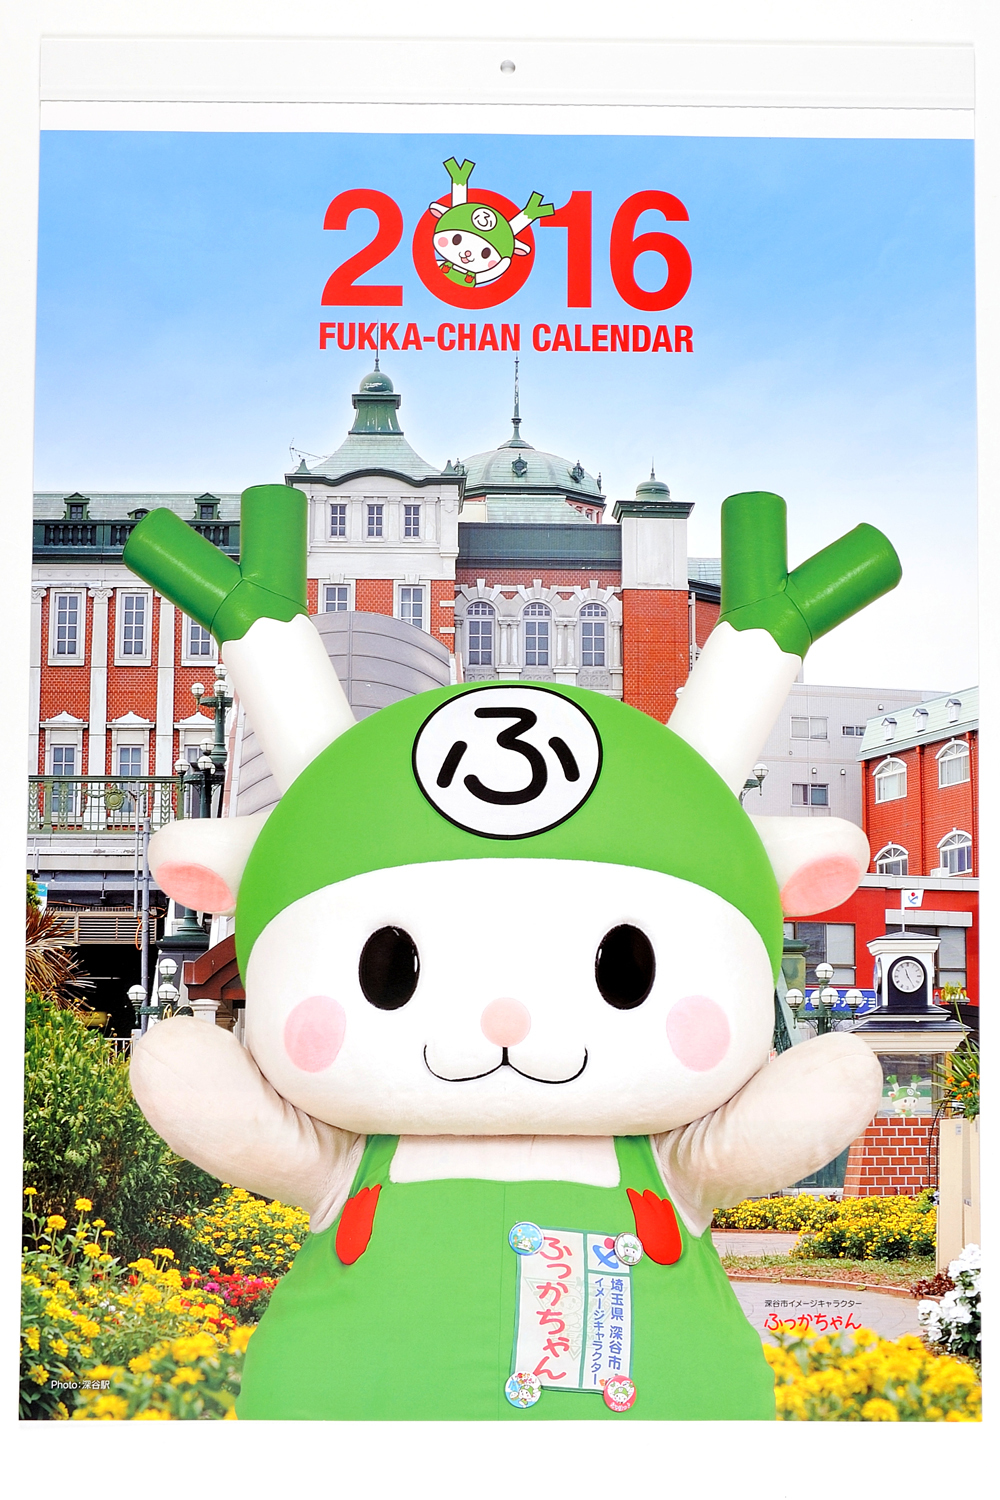 大人気 深谷市のイメージキャラクター「ふっかちゃん」大判カレンダー 